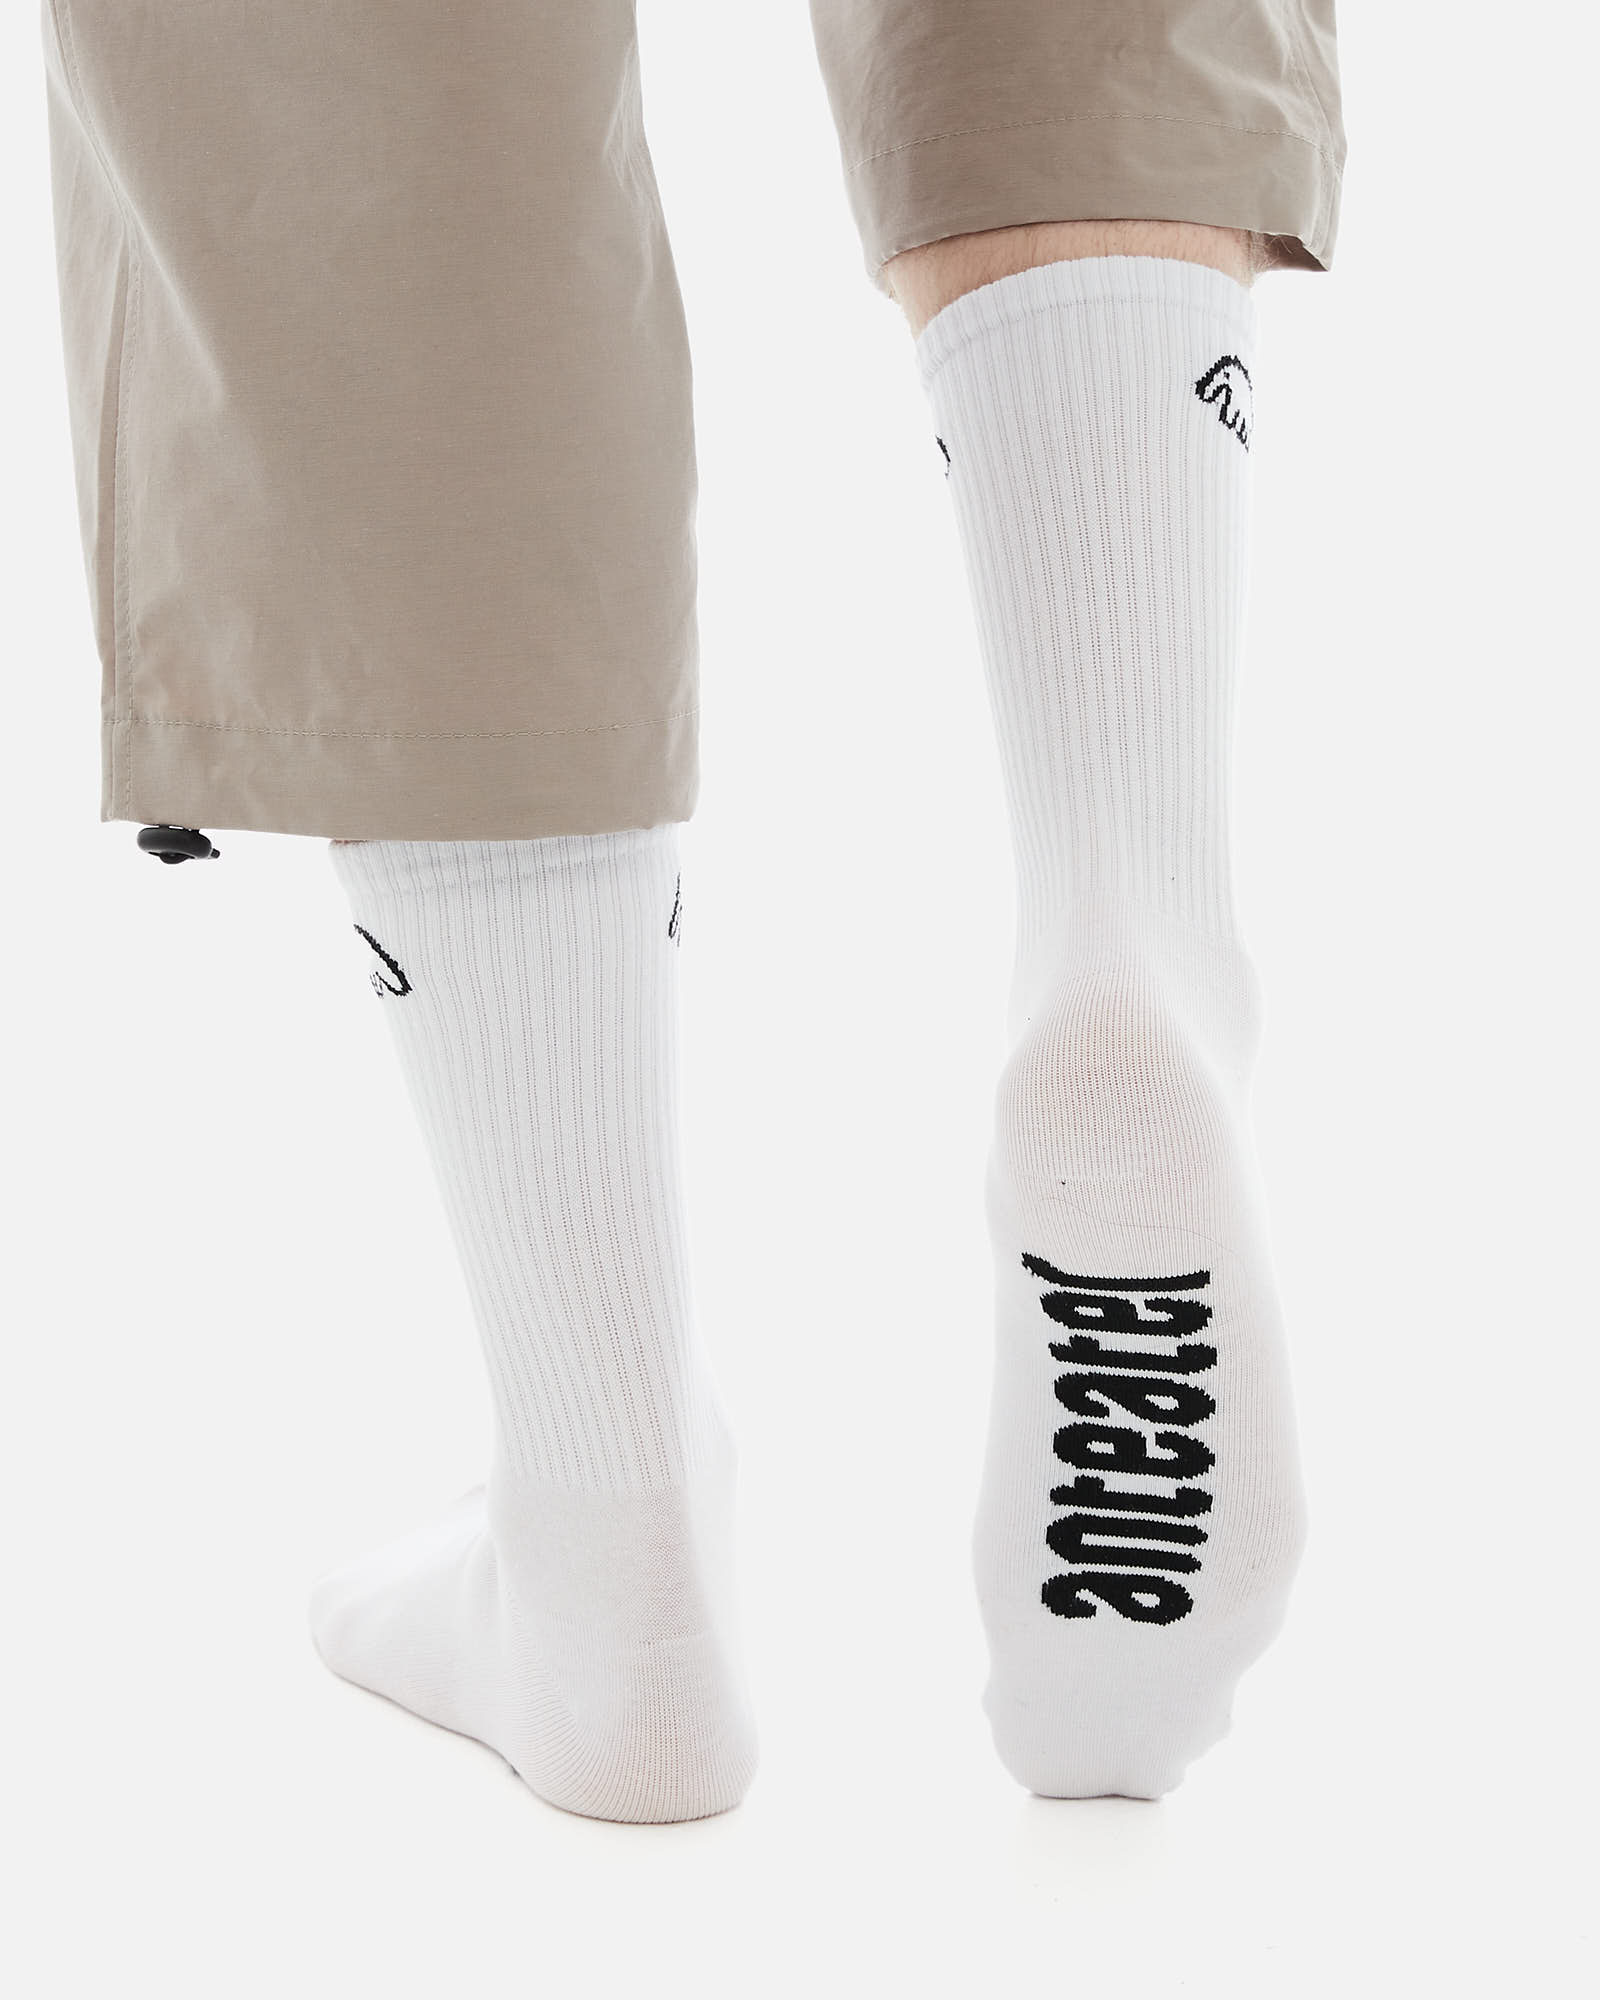 Носки Anteater Socks - фото 3